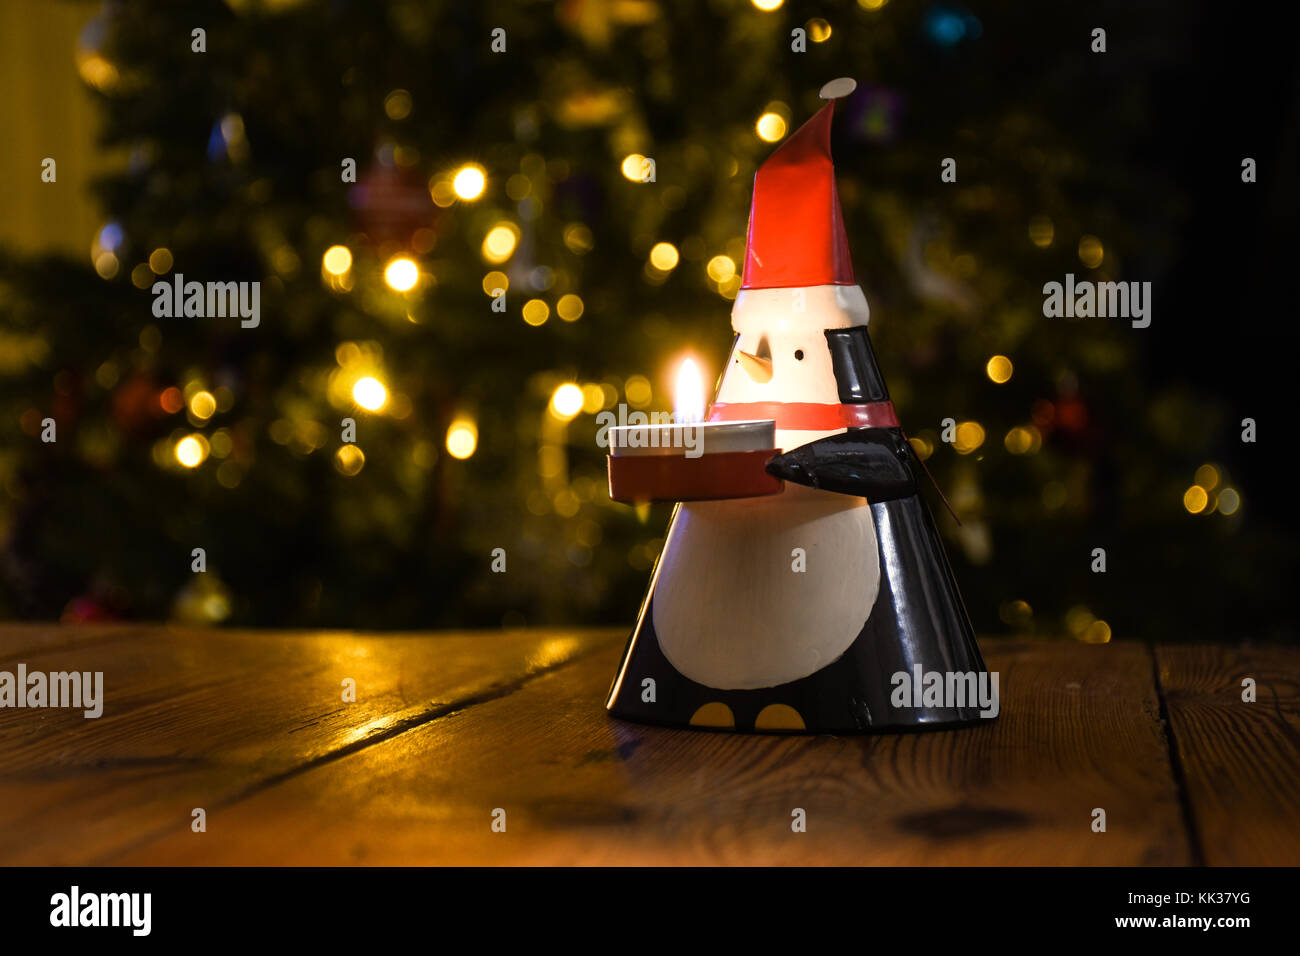 Pingouin de Noël et lumière chaude aux chandelles Banque D'Images